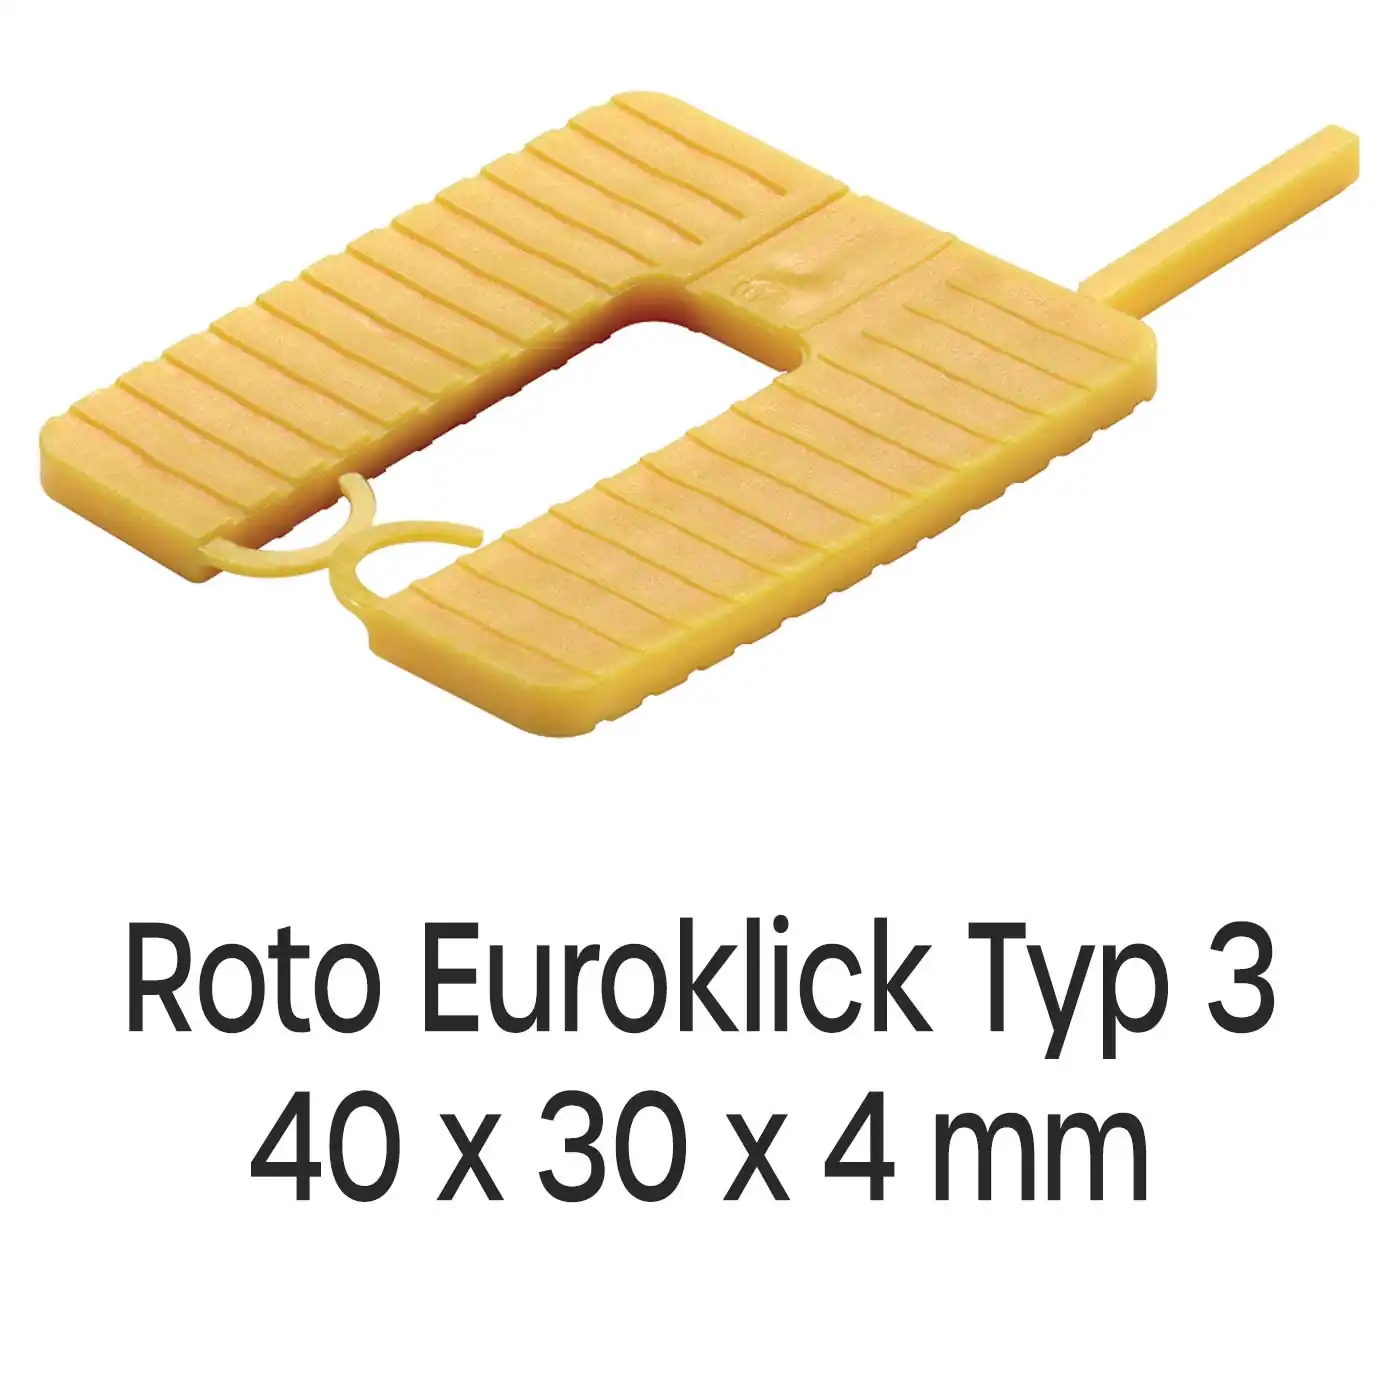 Distanzplatten Roto Euroklick Typ 3 40 x 30 x 4 mm 1000 Stück